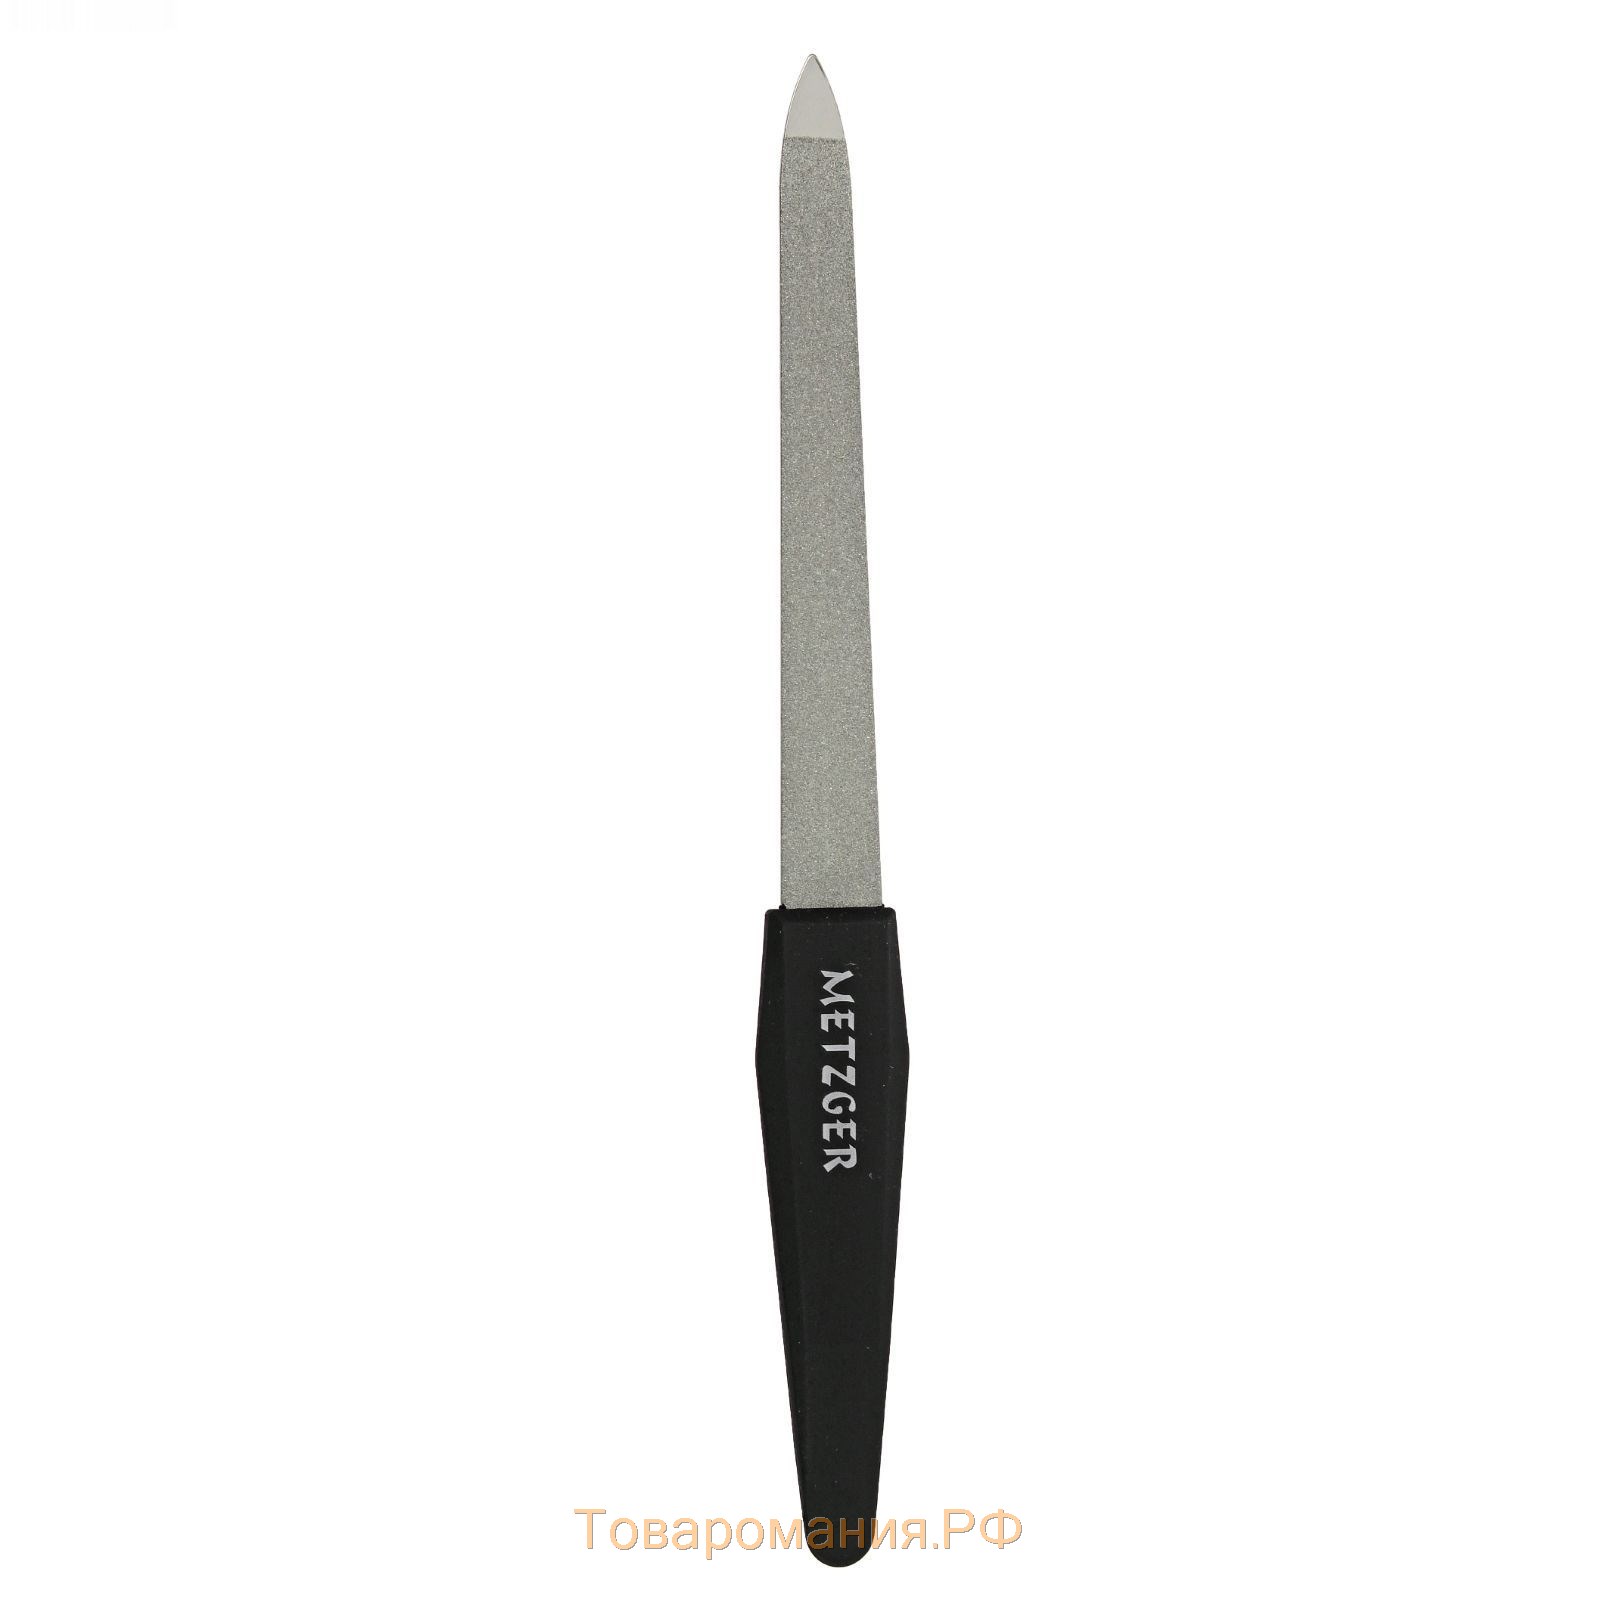 Пилка металлическая для ногтей, 15,2 см, в чехле, цвет чёрный, PF-927